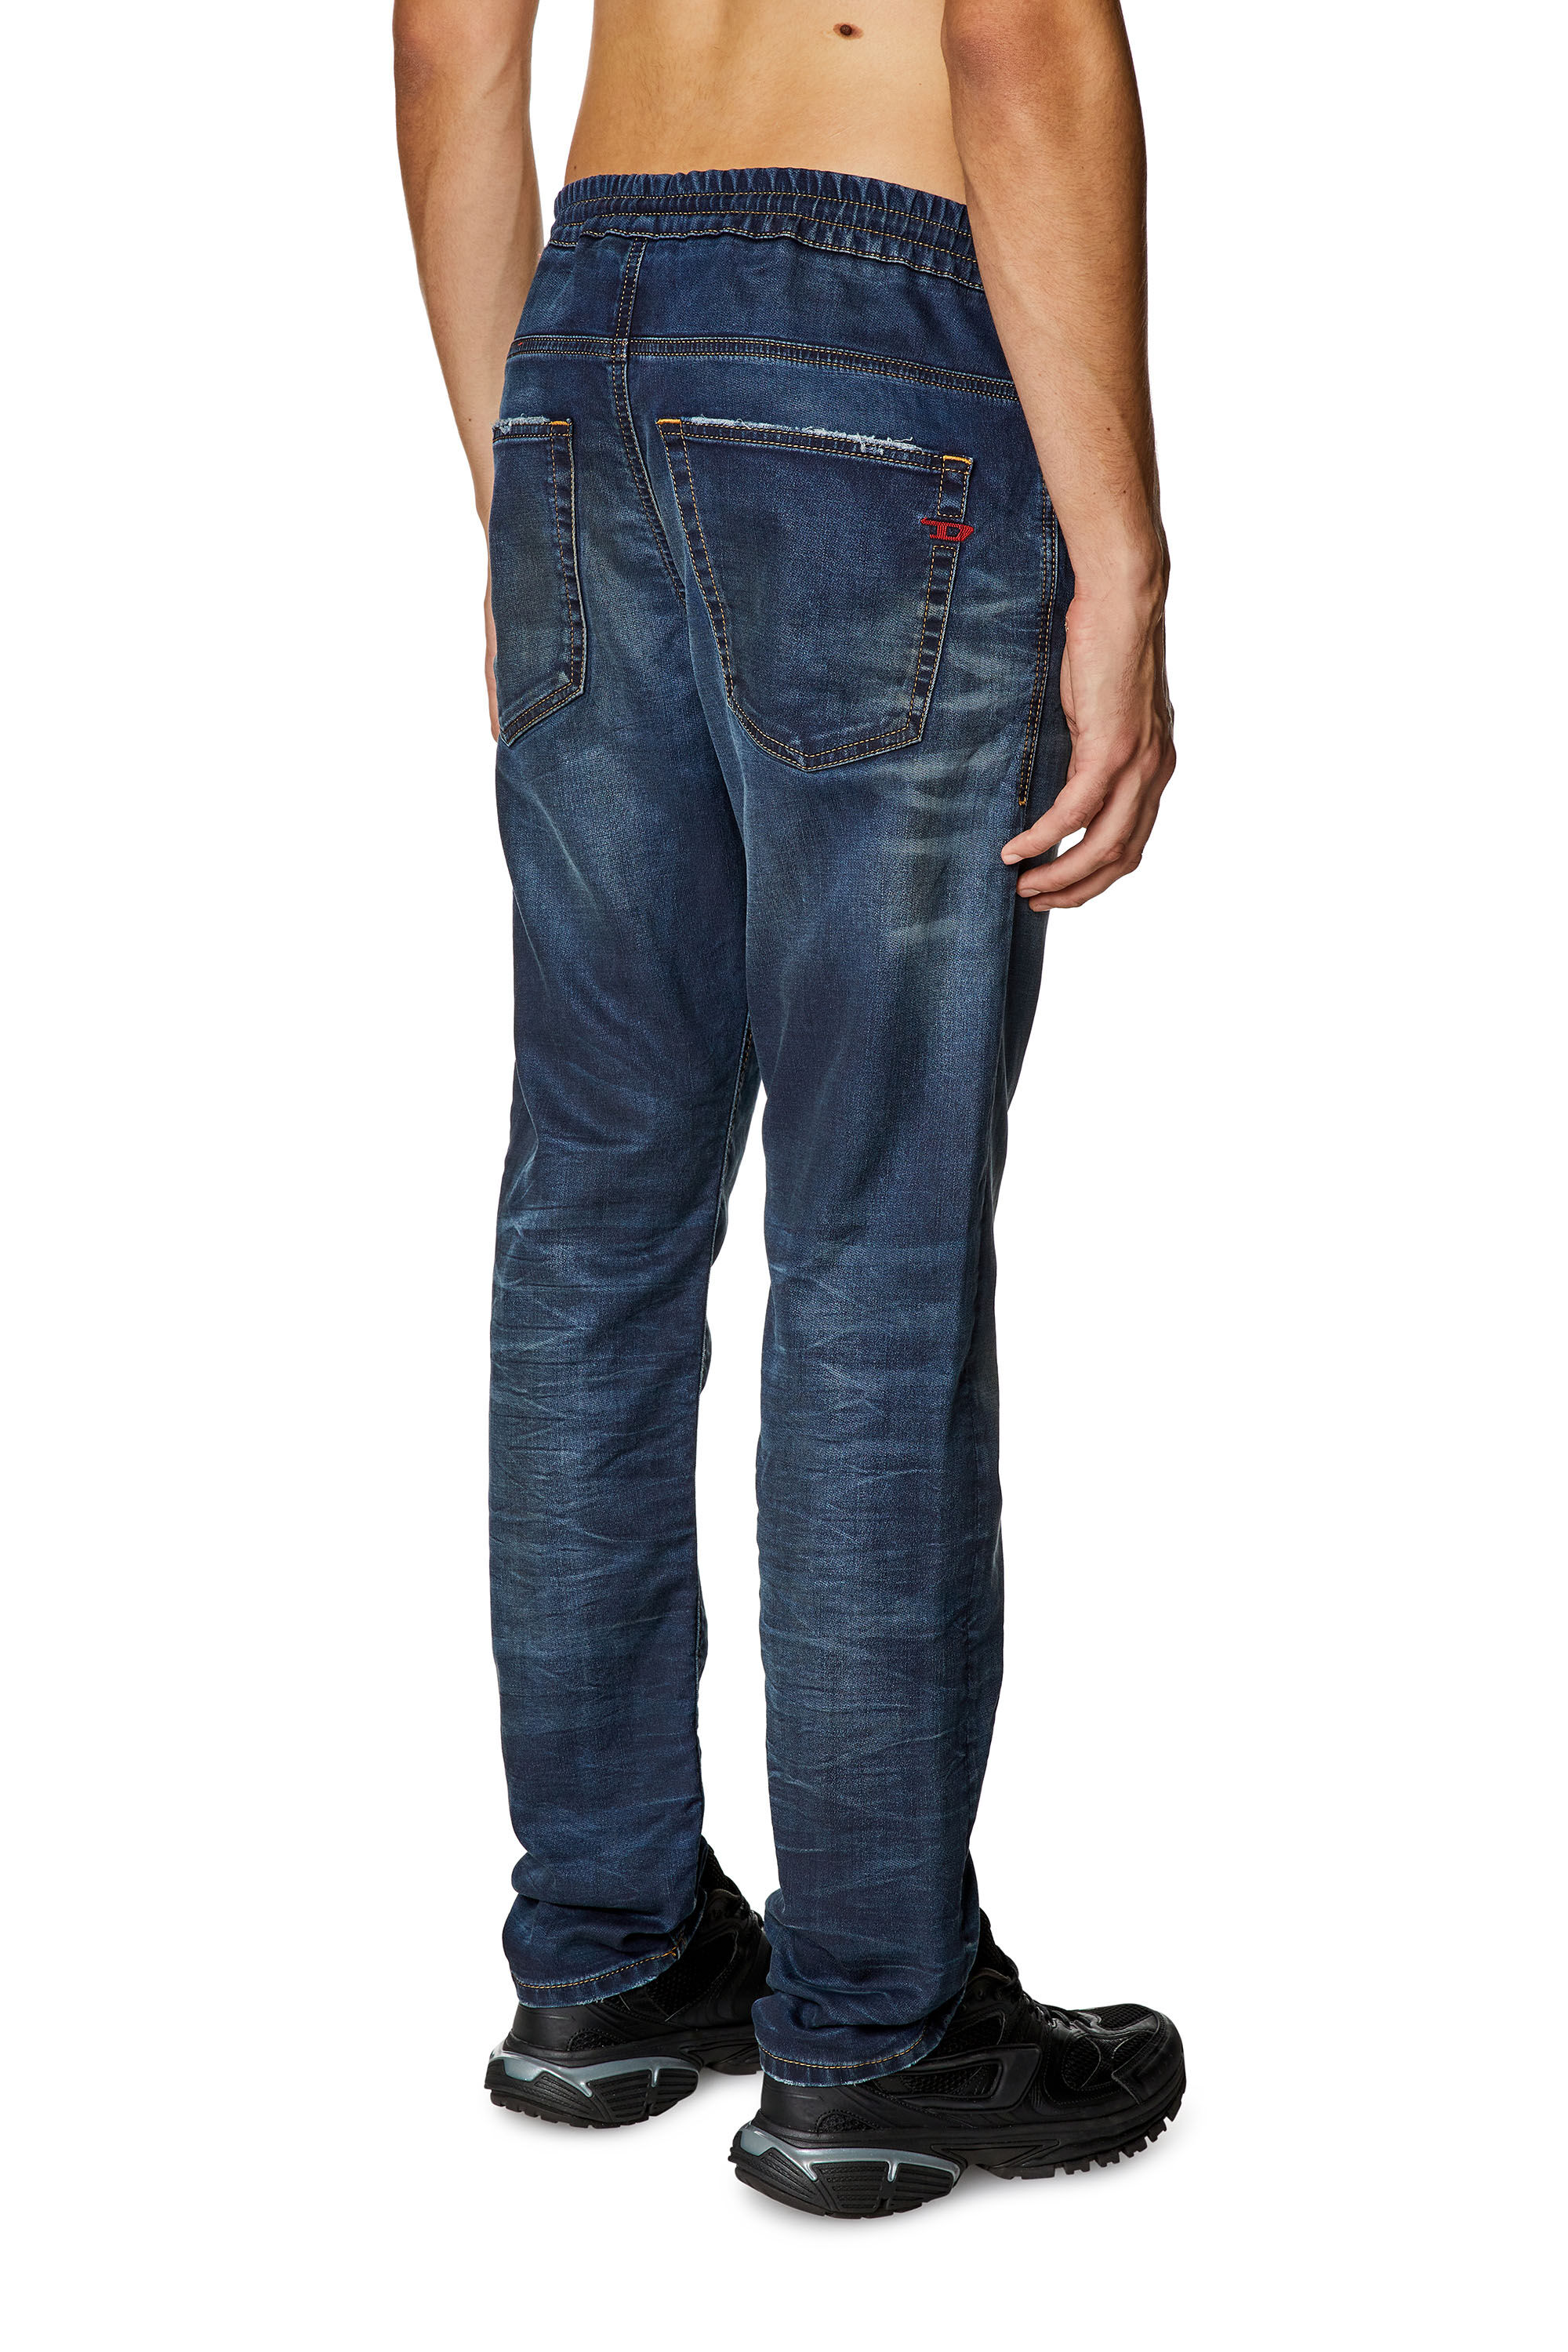 新作日本製DIESEL Jogg Jeans KROOLEY 30インチ パンツ